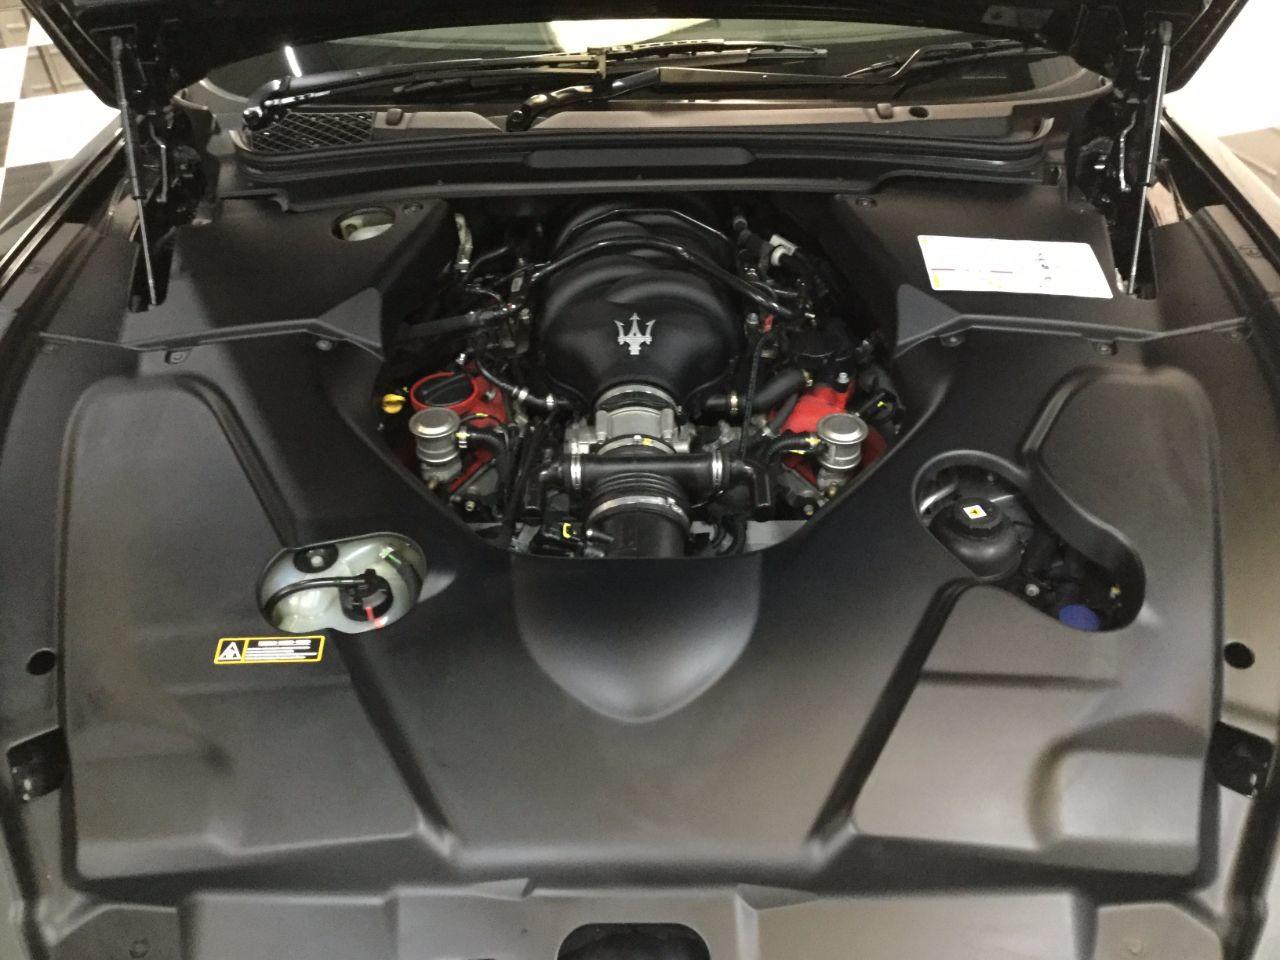 Maserati Granturismo 4.7 V8 S 2dr Automatic Coupe Petrol Grey